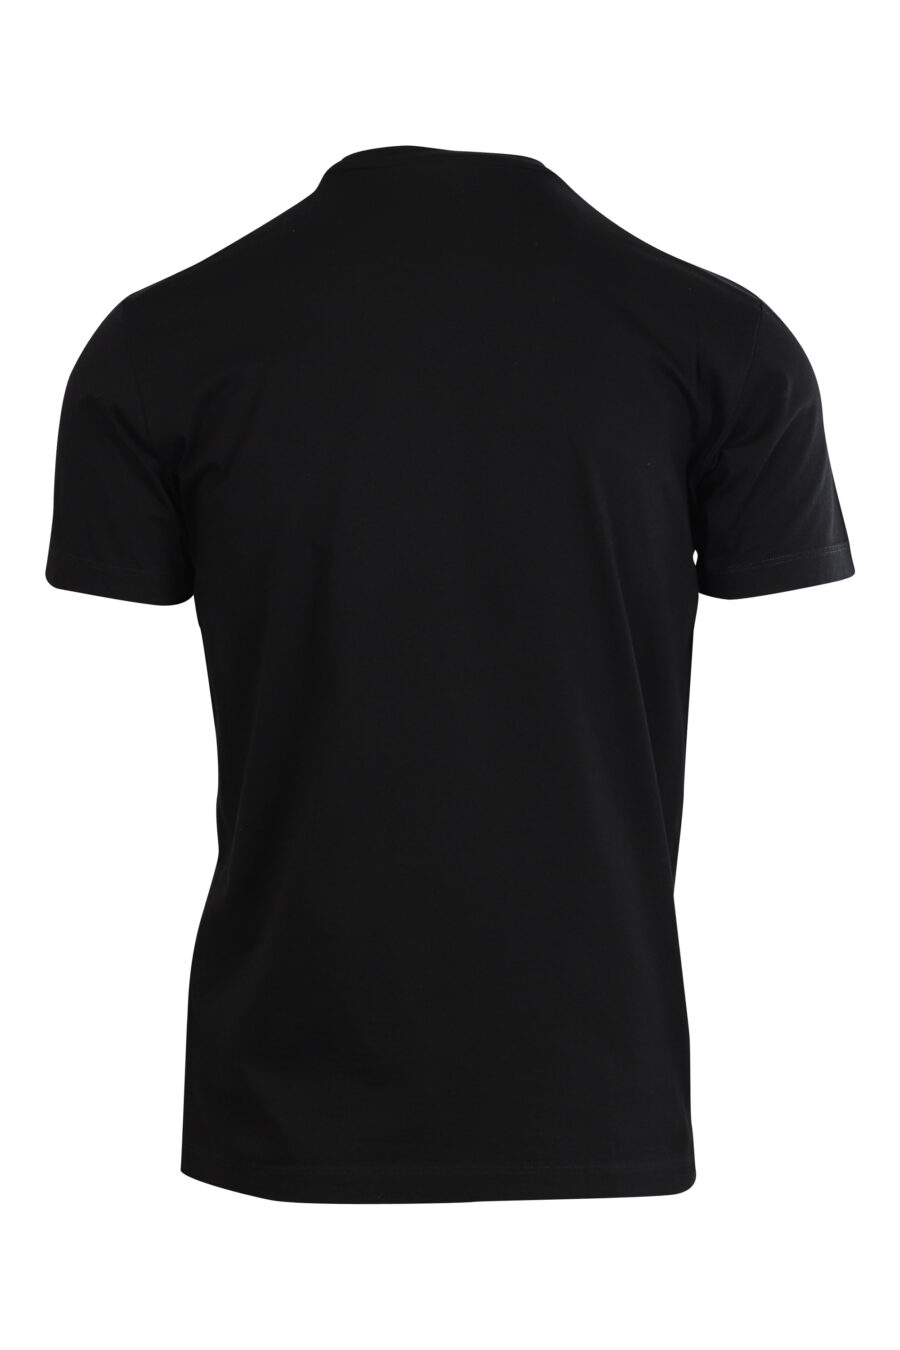 Camiseta negra con maxilogo "icon pixeled" turquesa y fucsia - 8052134981269 2